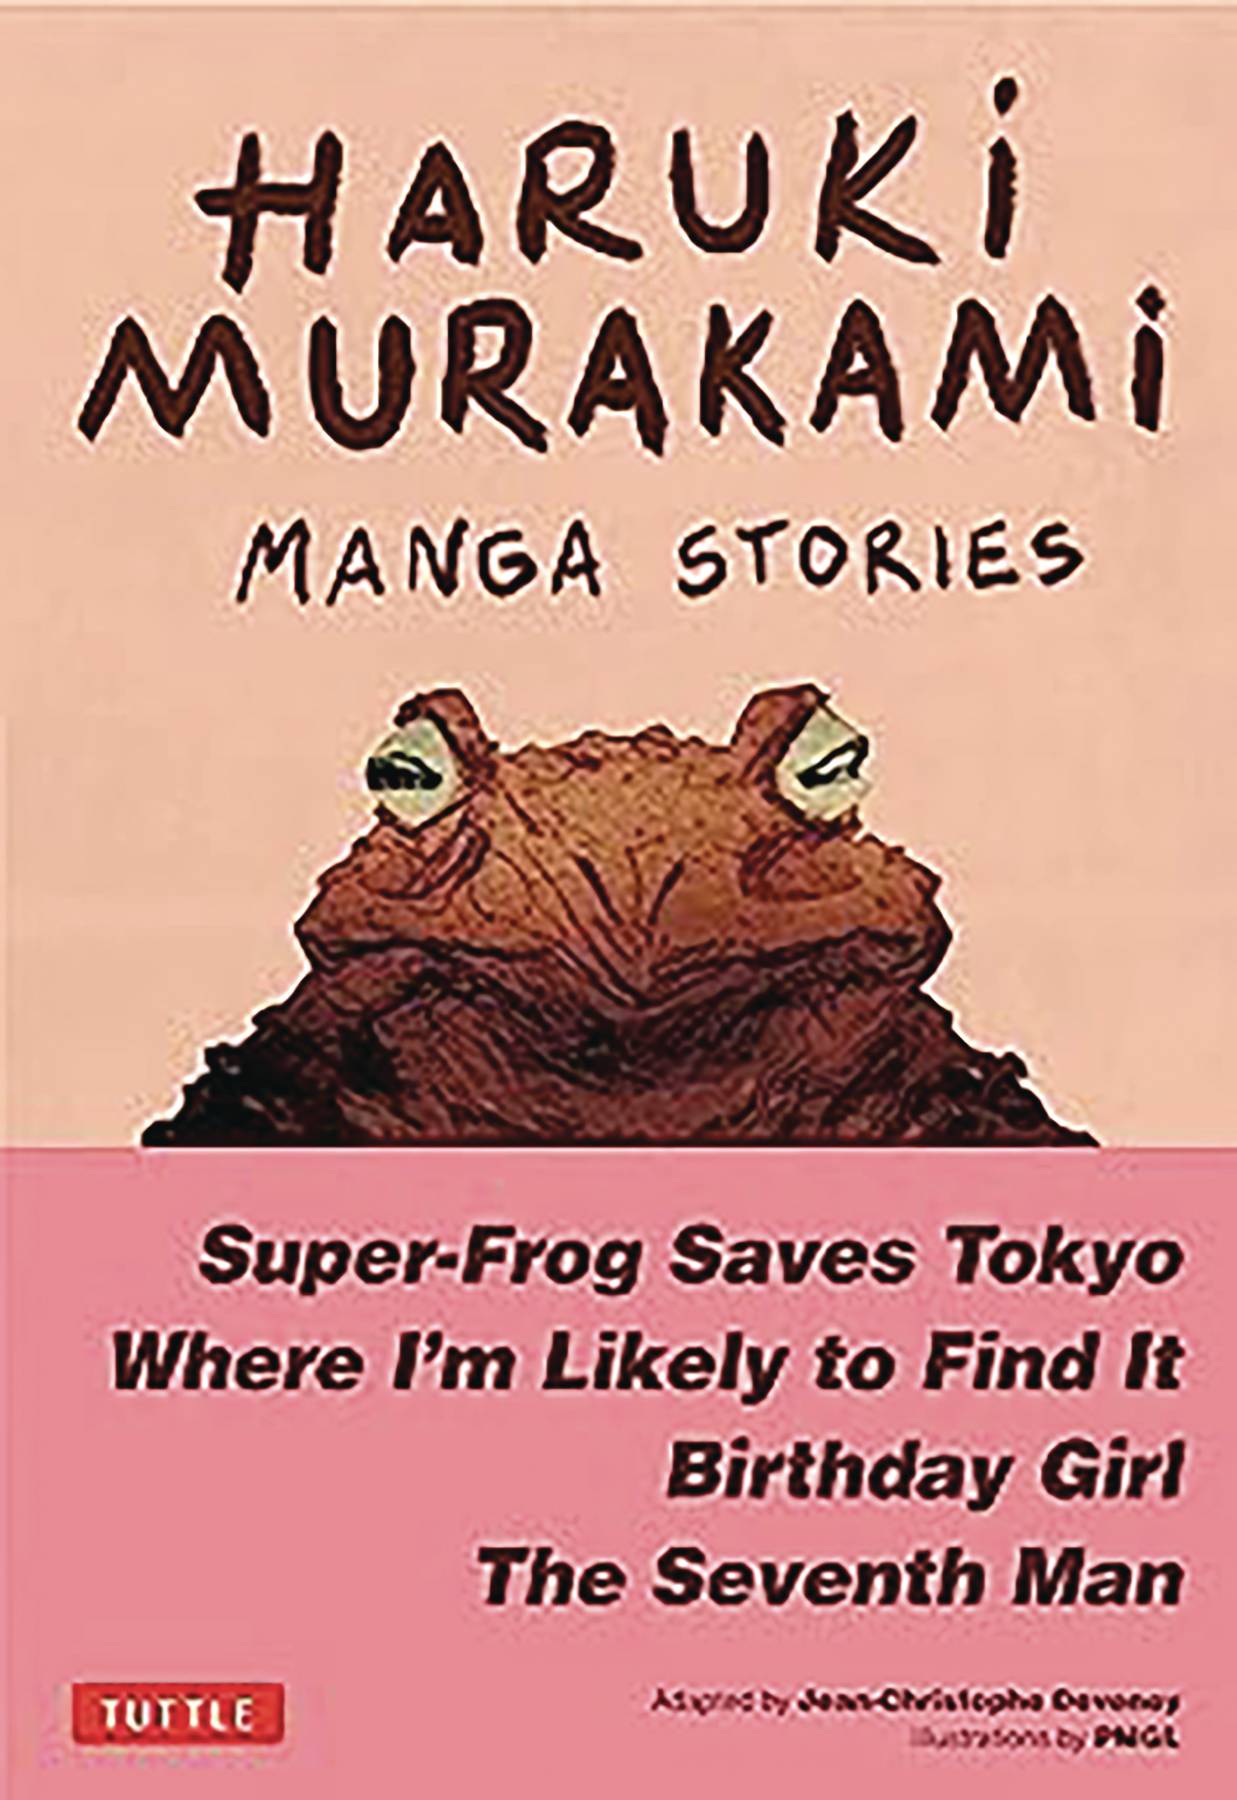 HARUKI MURAKAMI MANGA STORIES HC VOL #1